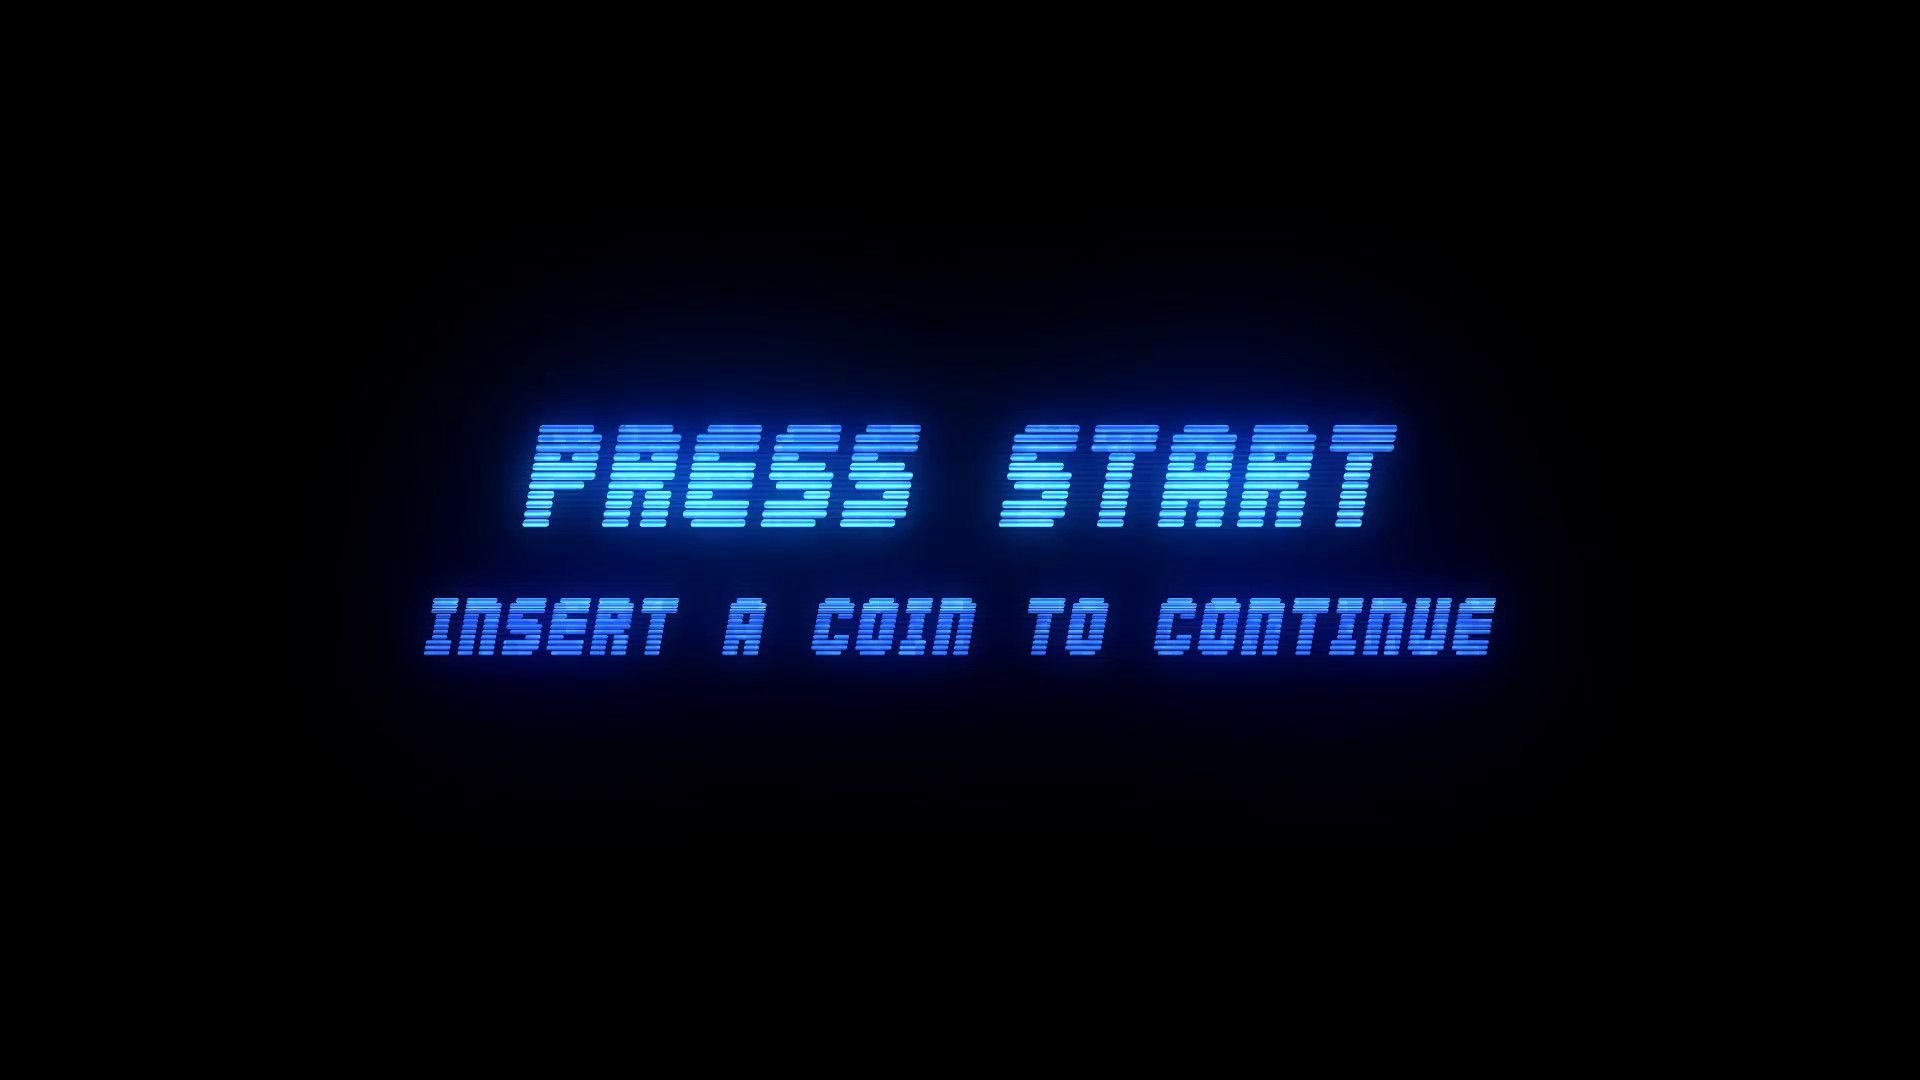 Start graalcrmbot. Press start to game. Кнопка Press start. Надпись Press start. Надпись start game.